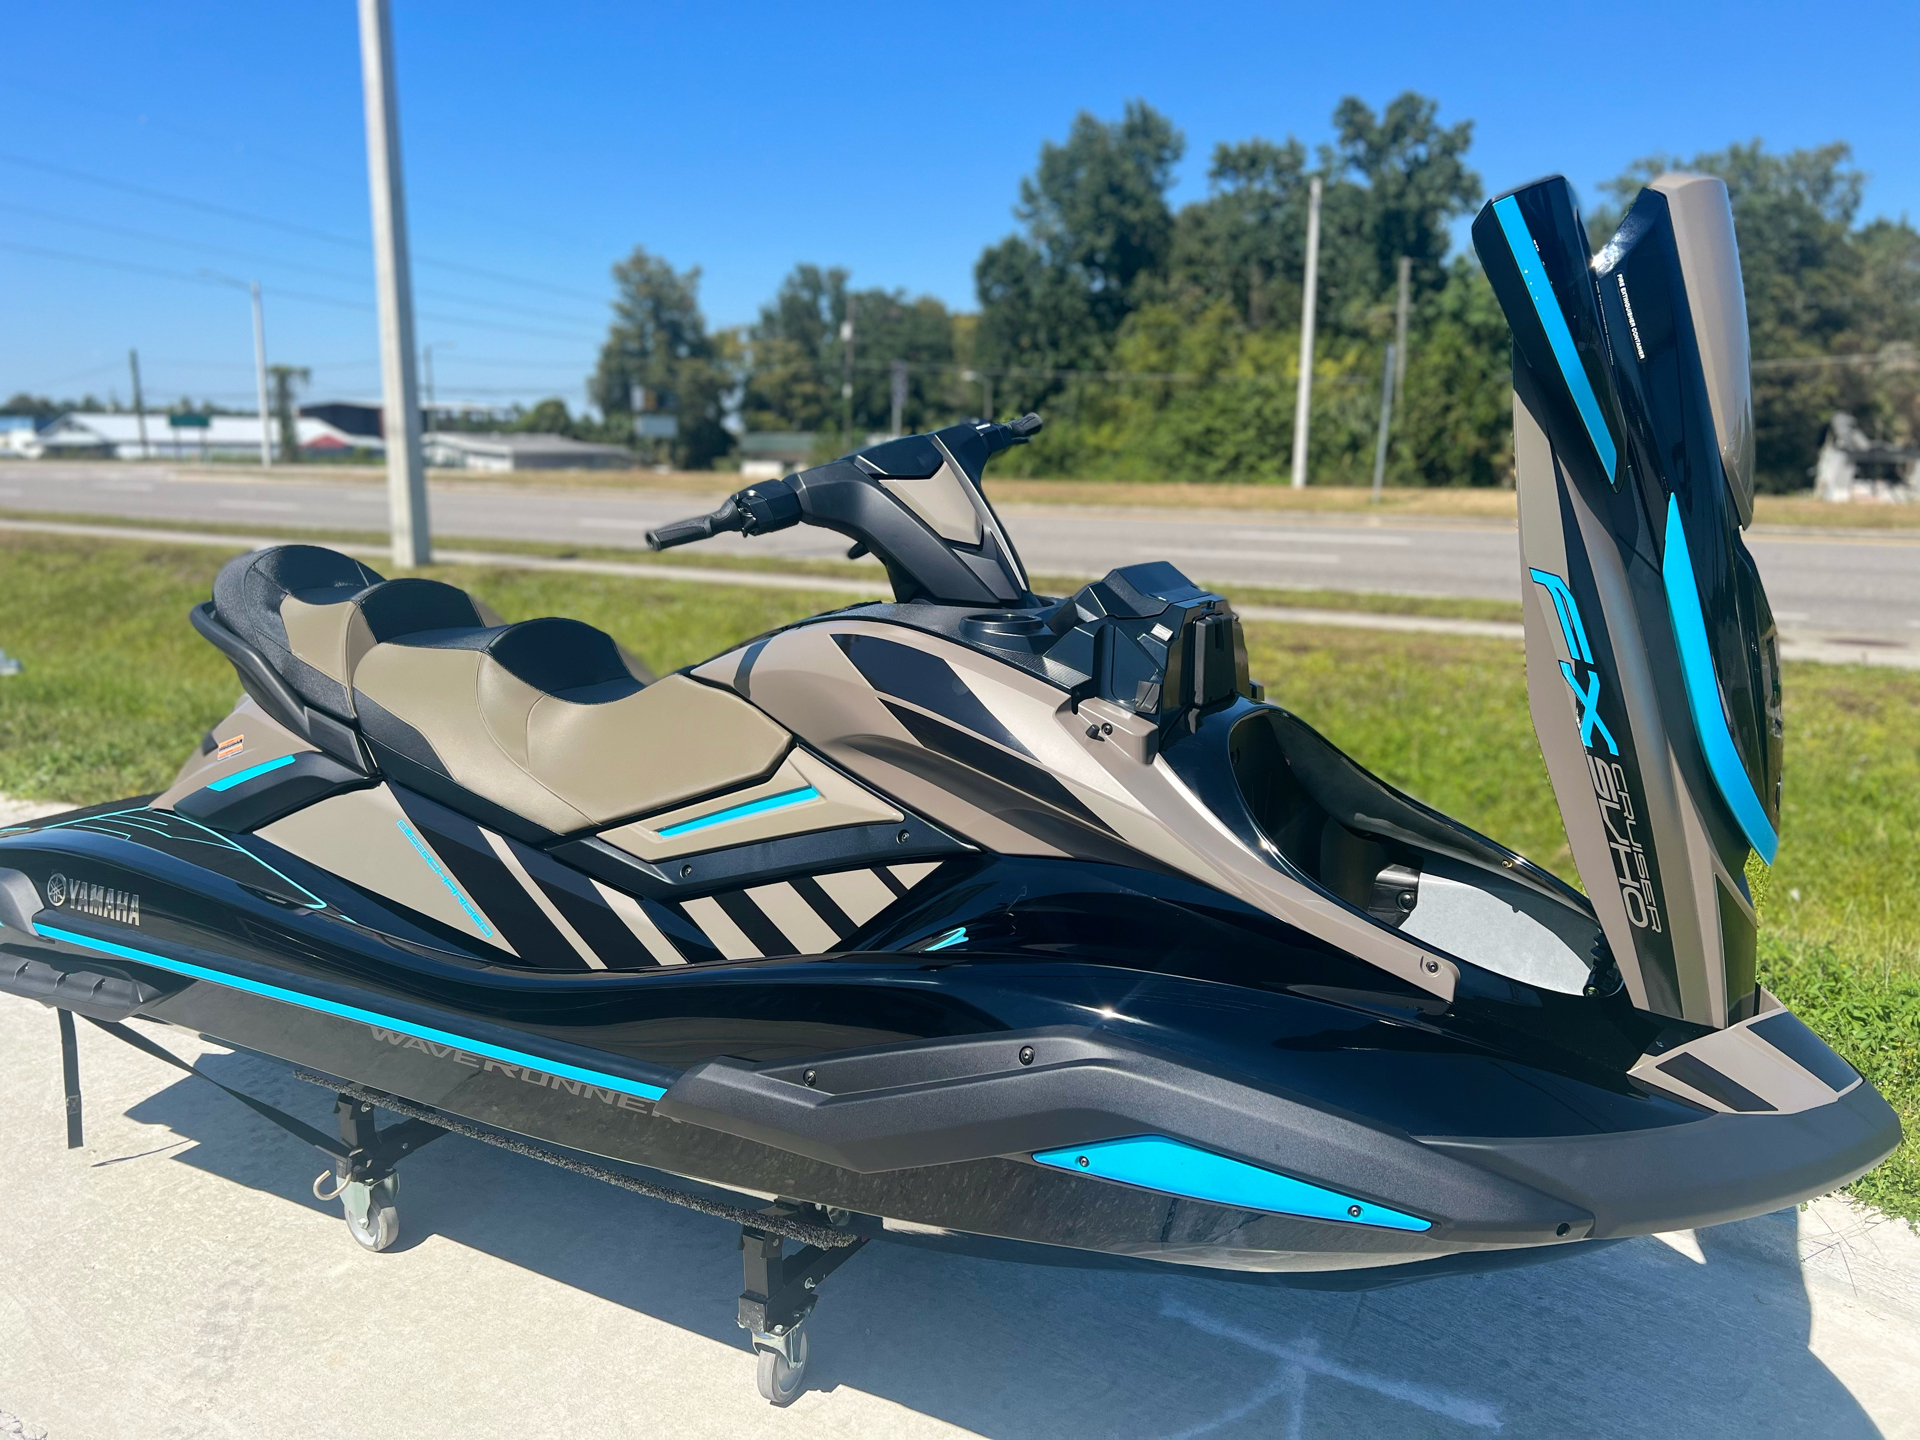 2022 Yamaha FX Cruiser SVHO in Orlando, Florida - Photo 13